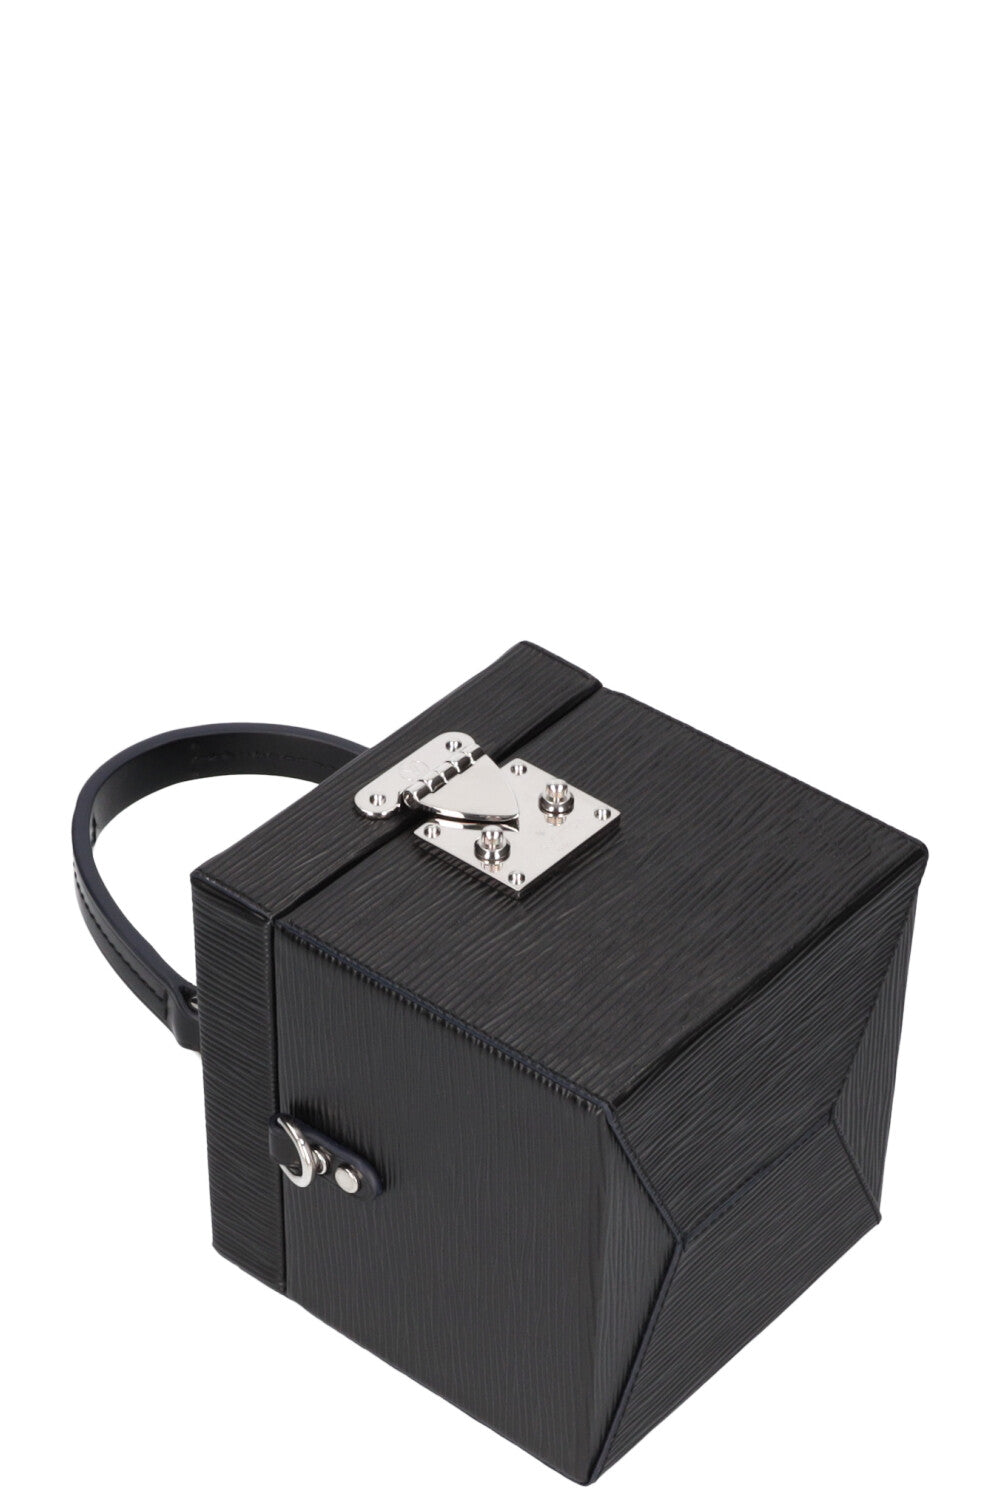 ArtStation - Louis Vuitton Bleecker Box